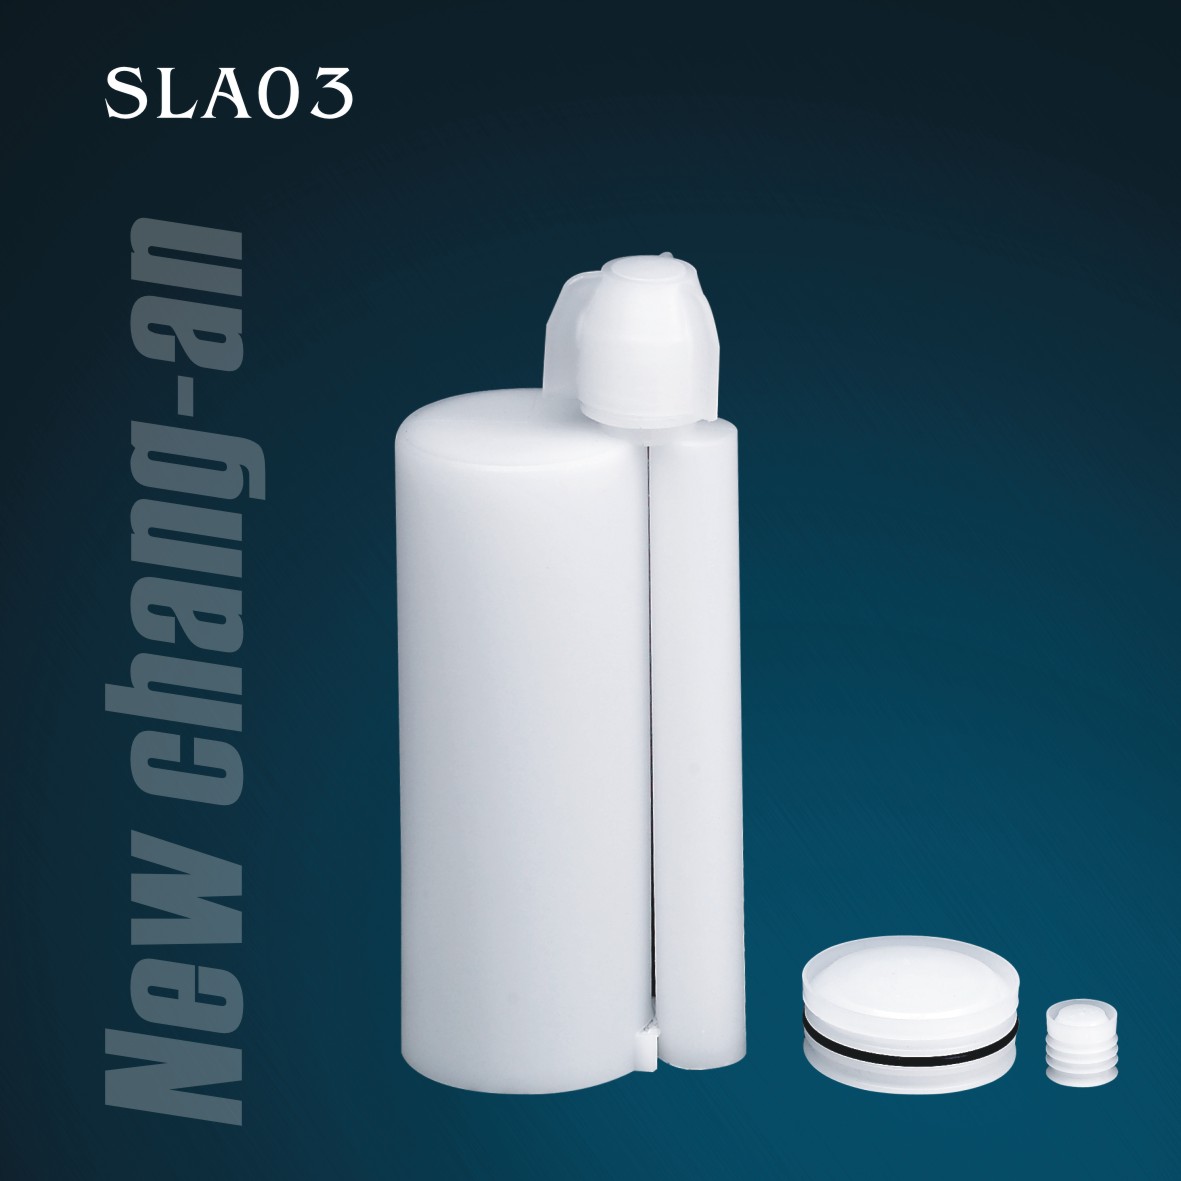 180 ml: Cartucho doble de dos componentes de 18 ml para el paquete A + B Adhesivo SLA03